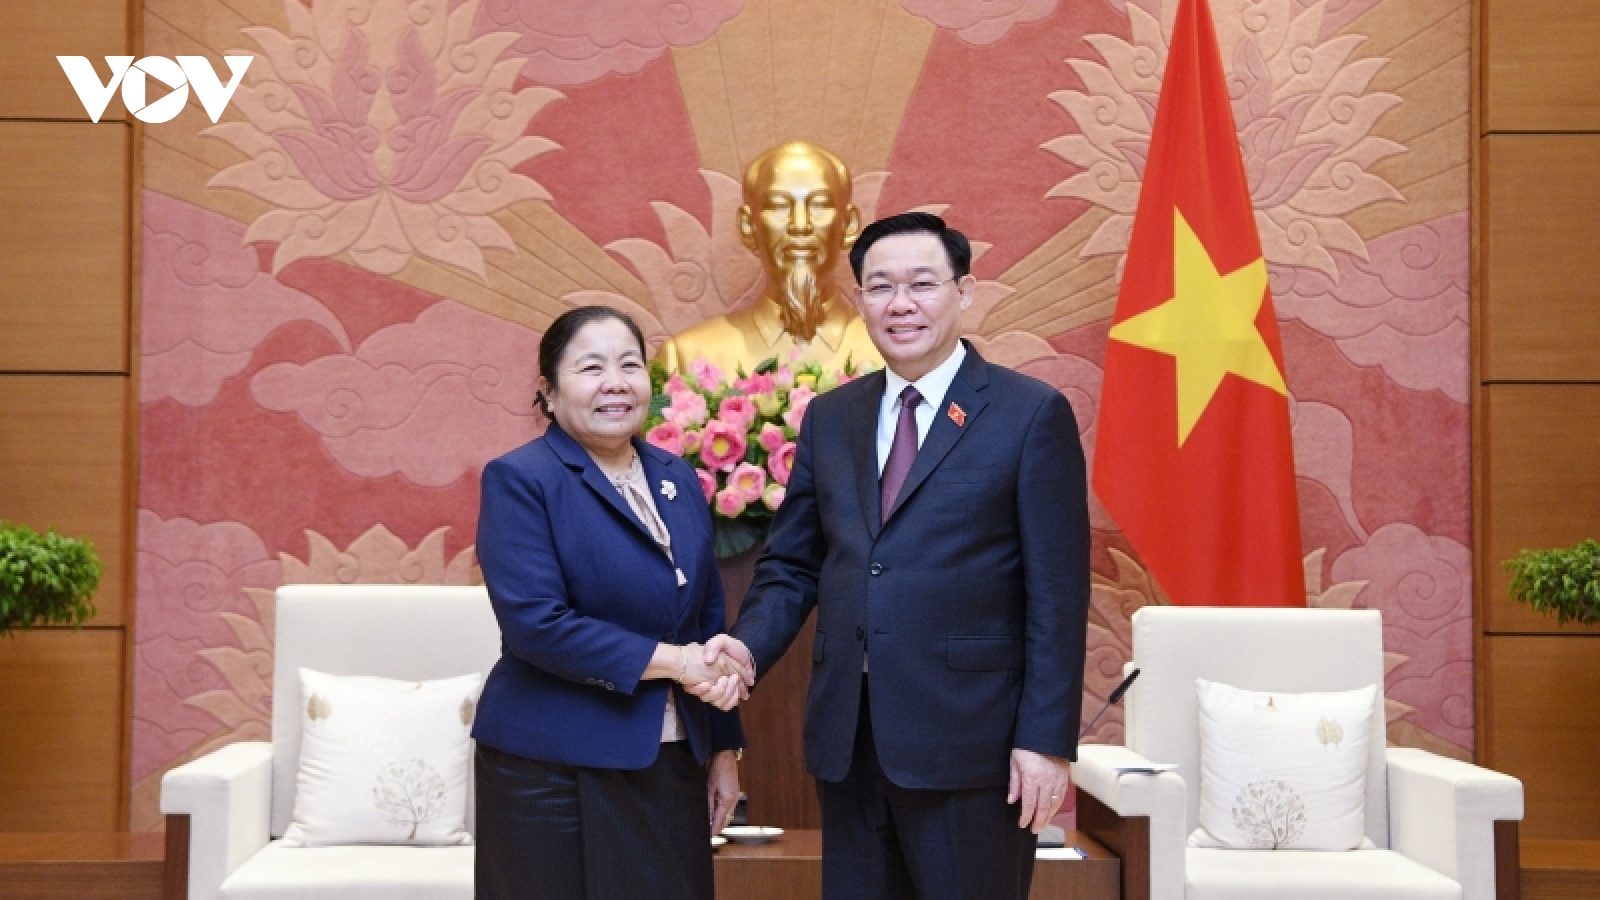 Chủ tịch Quốc hội Vương Đình Huệ tiếp Trưởng Ban Tổ chức Đảng NDCM Lào